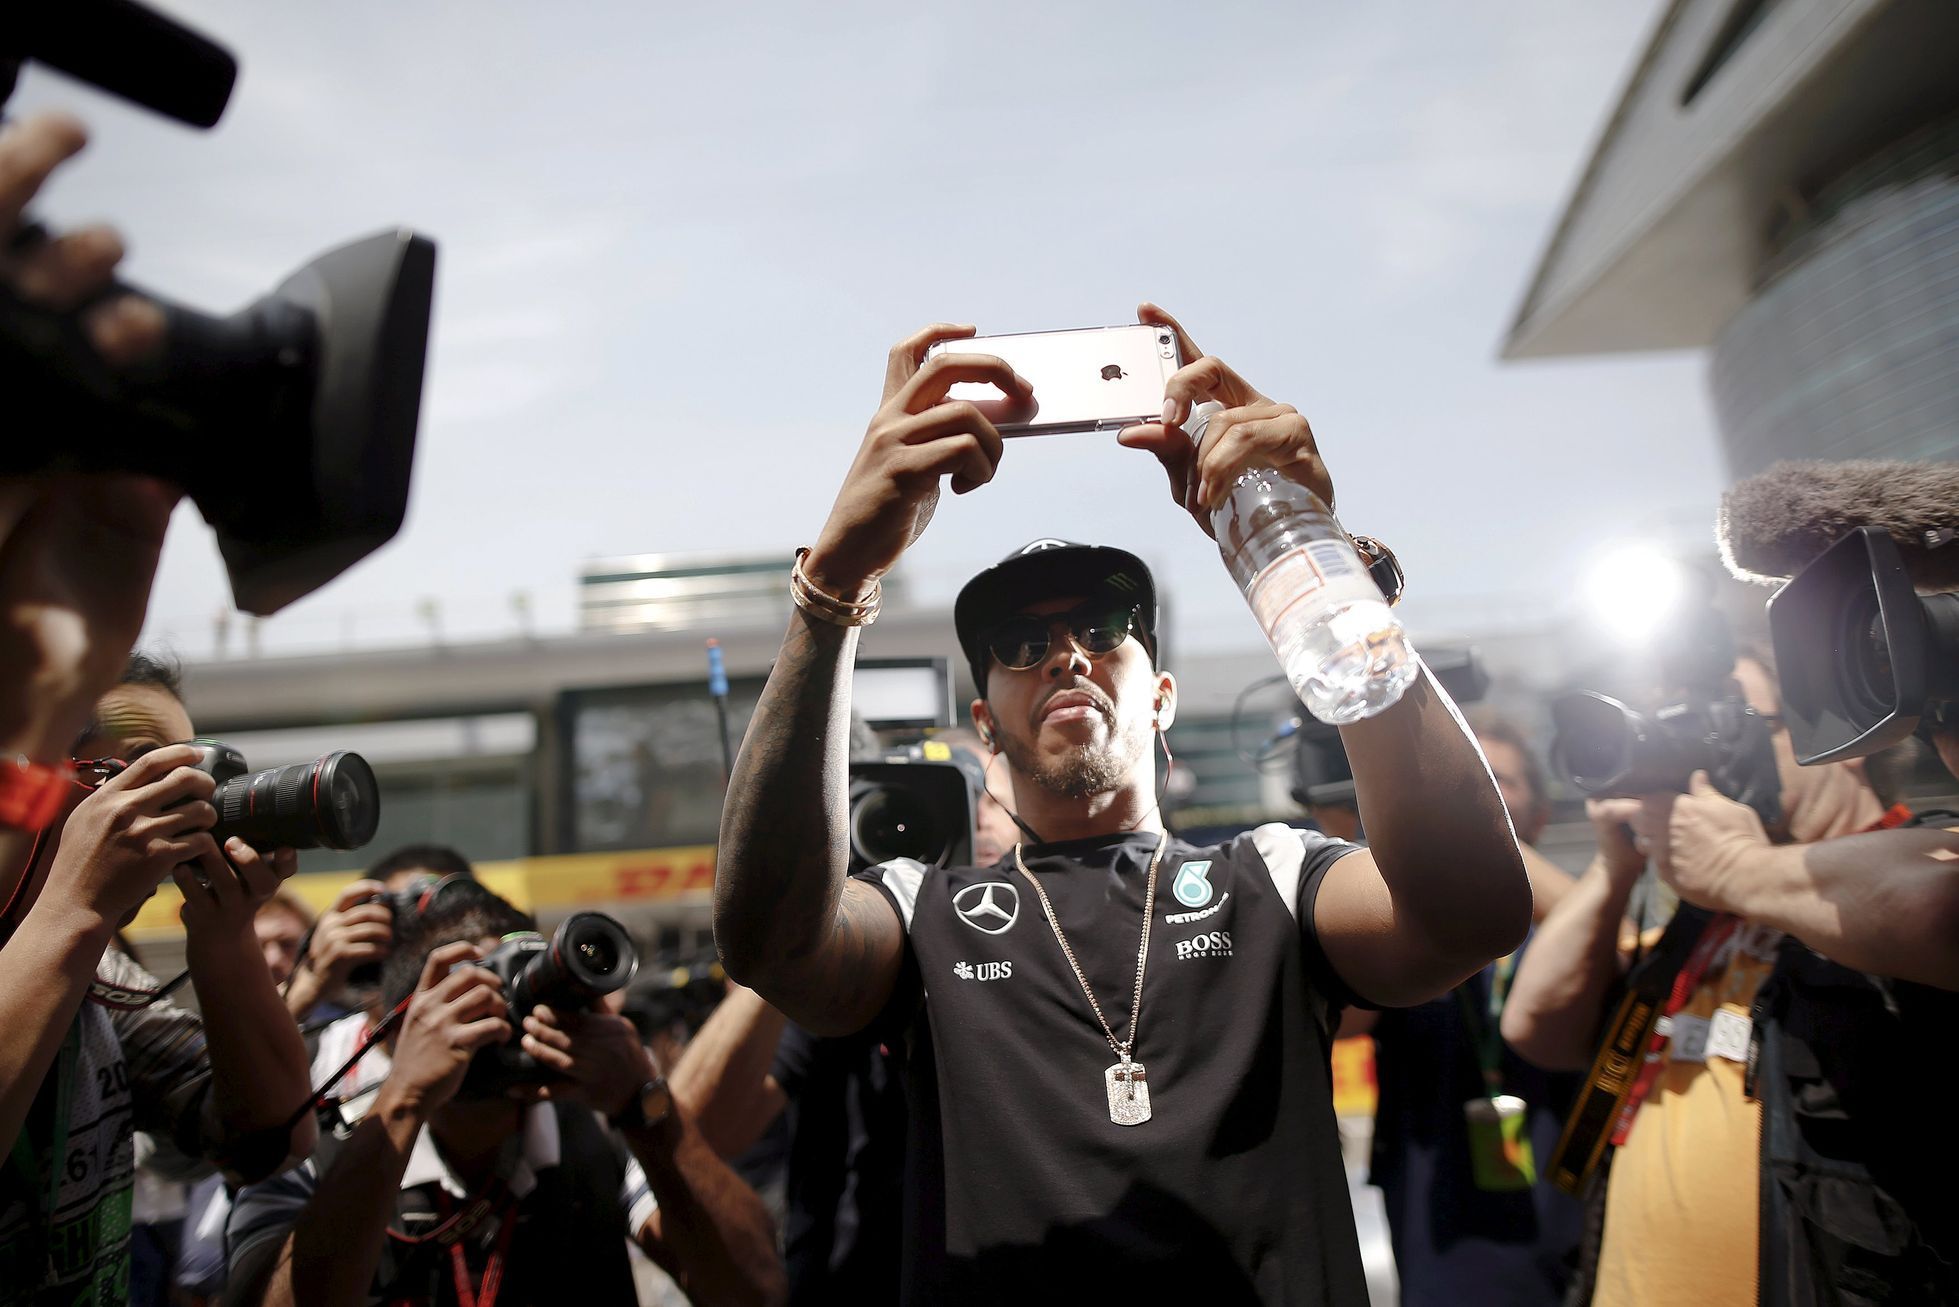 F1, VC Číny 2016: Lewis Hamilton, Mercedes